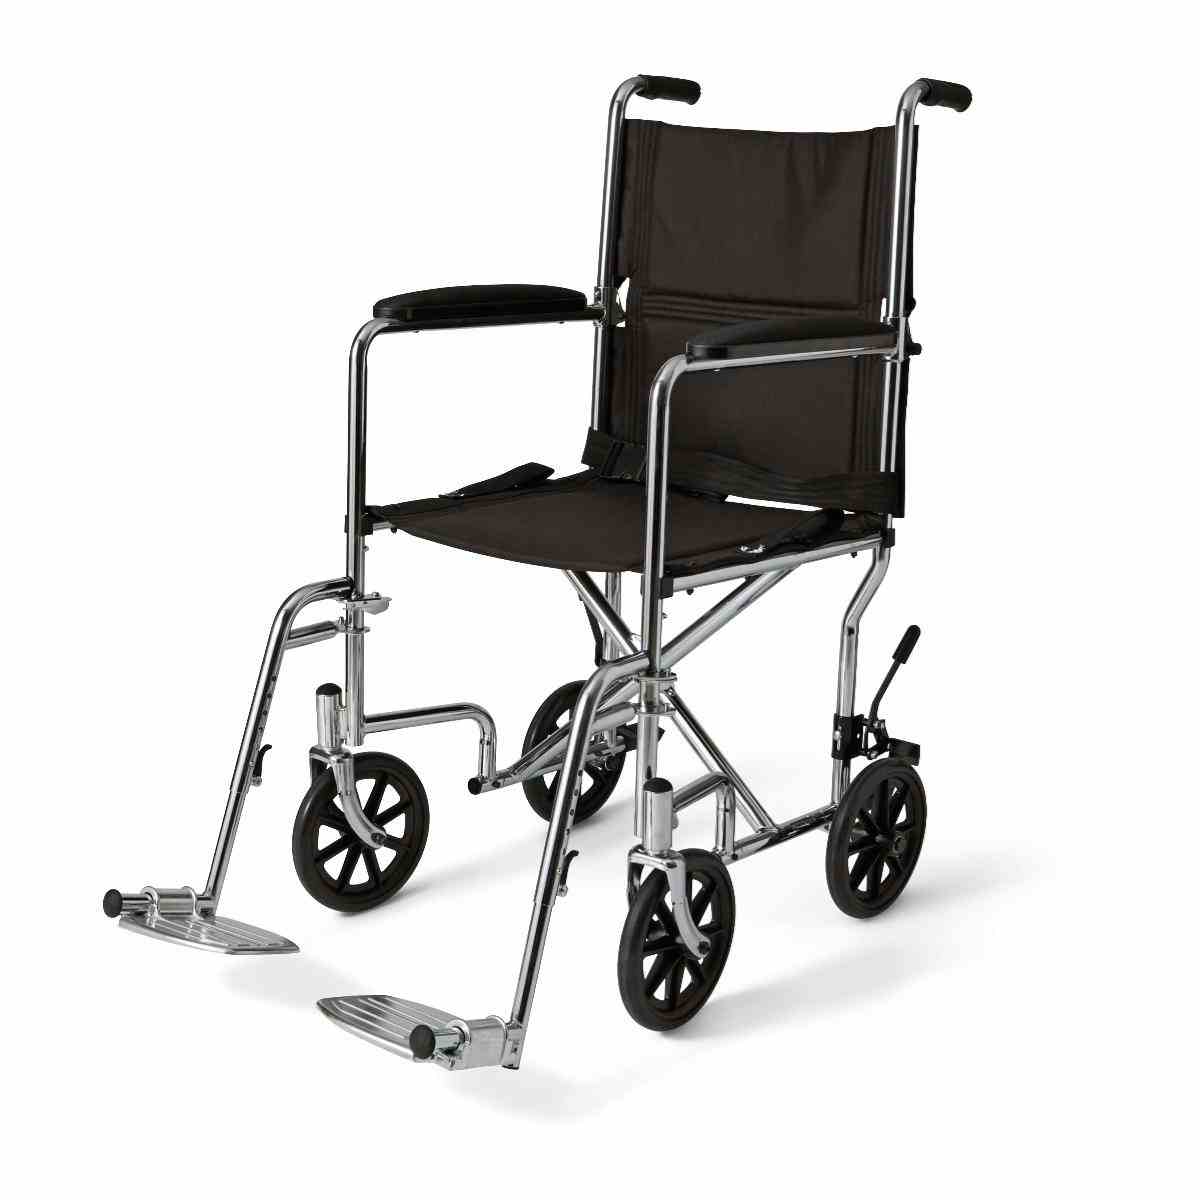 Medline Basic Transport Chair, Permanent Armrests, Detachable Swing-Away Footrests, 8", MDS808200, Black - 1 Each